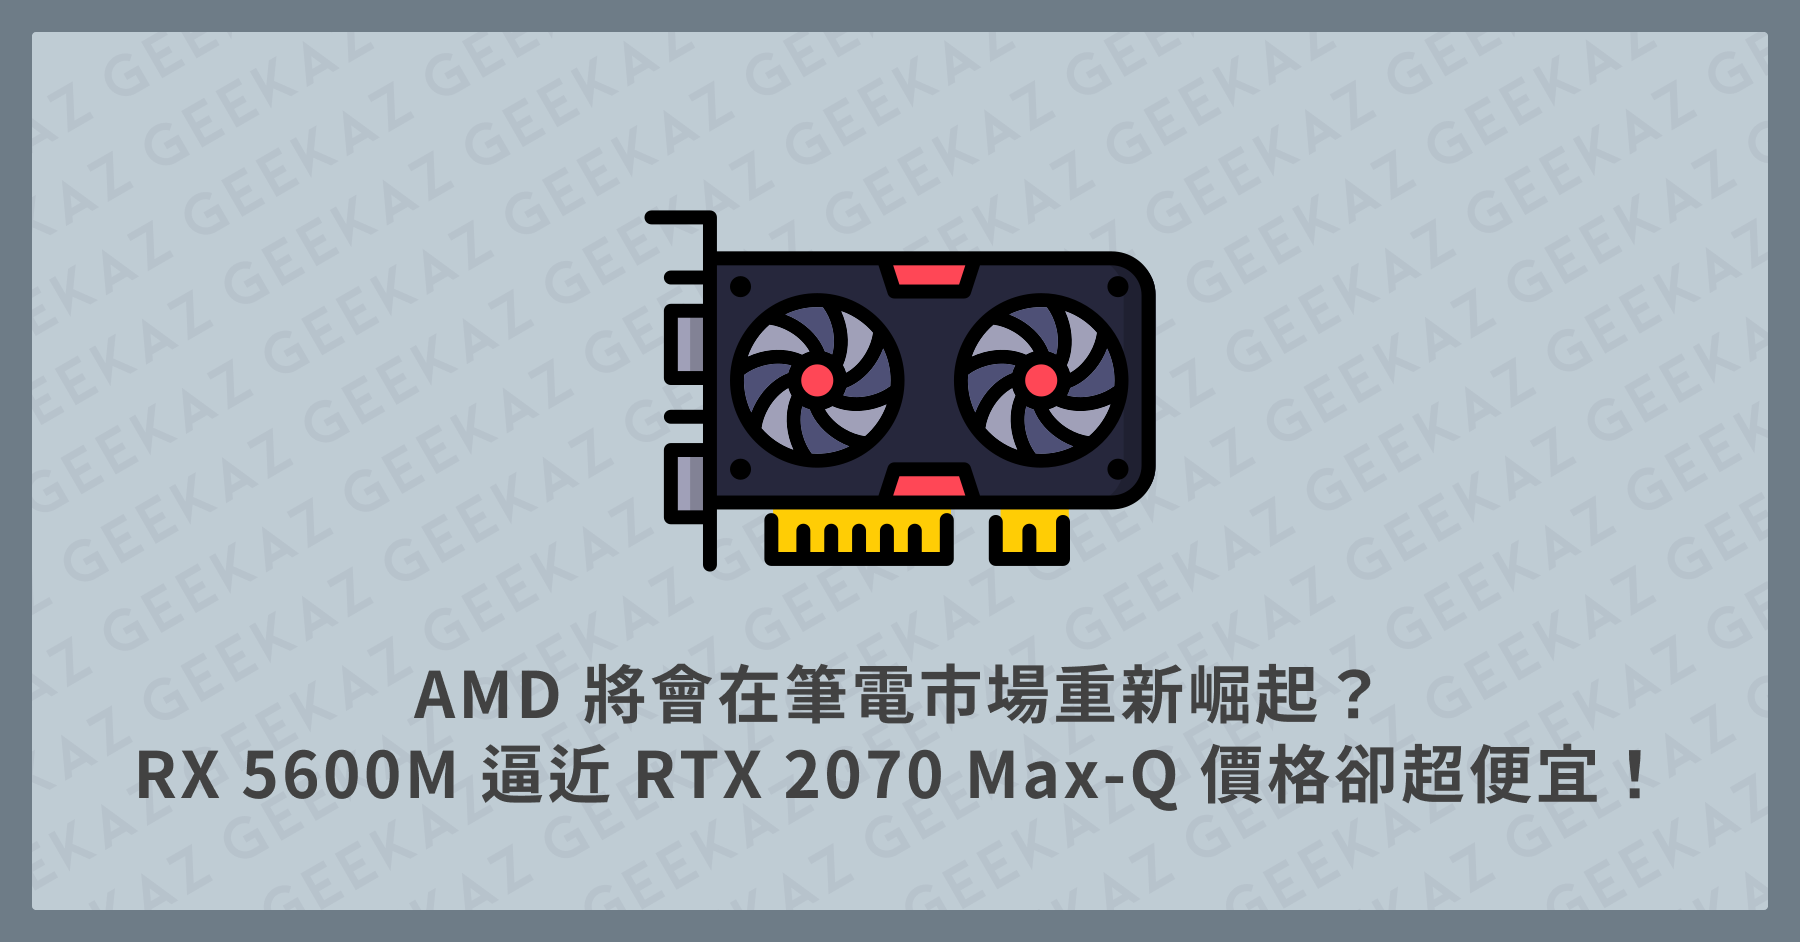 AMD 筆電顯卡 RX 5600M